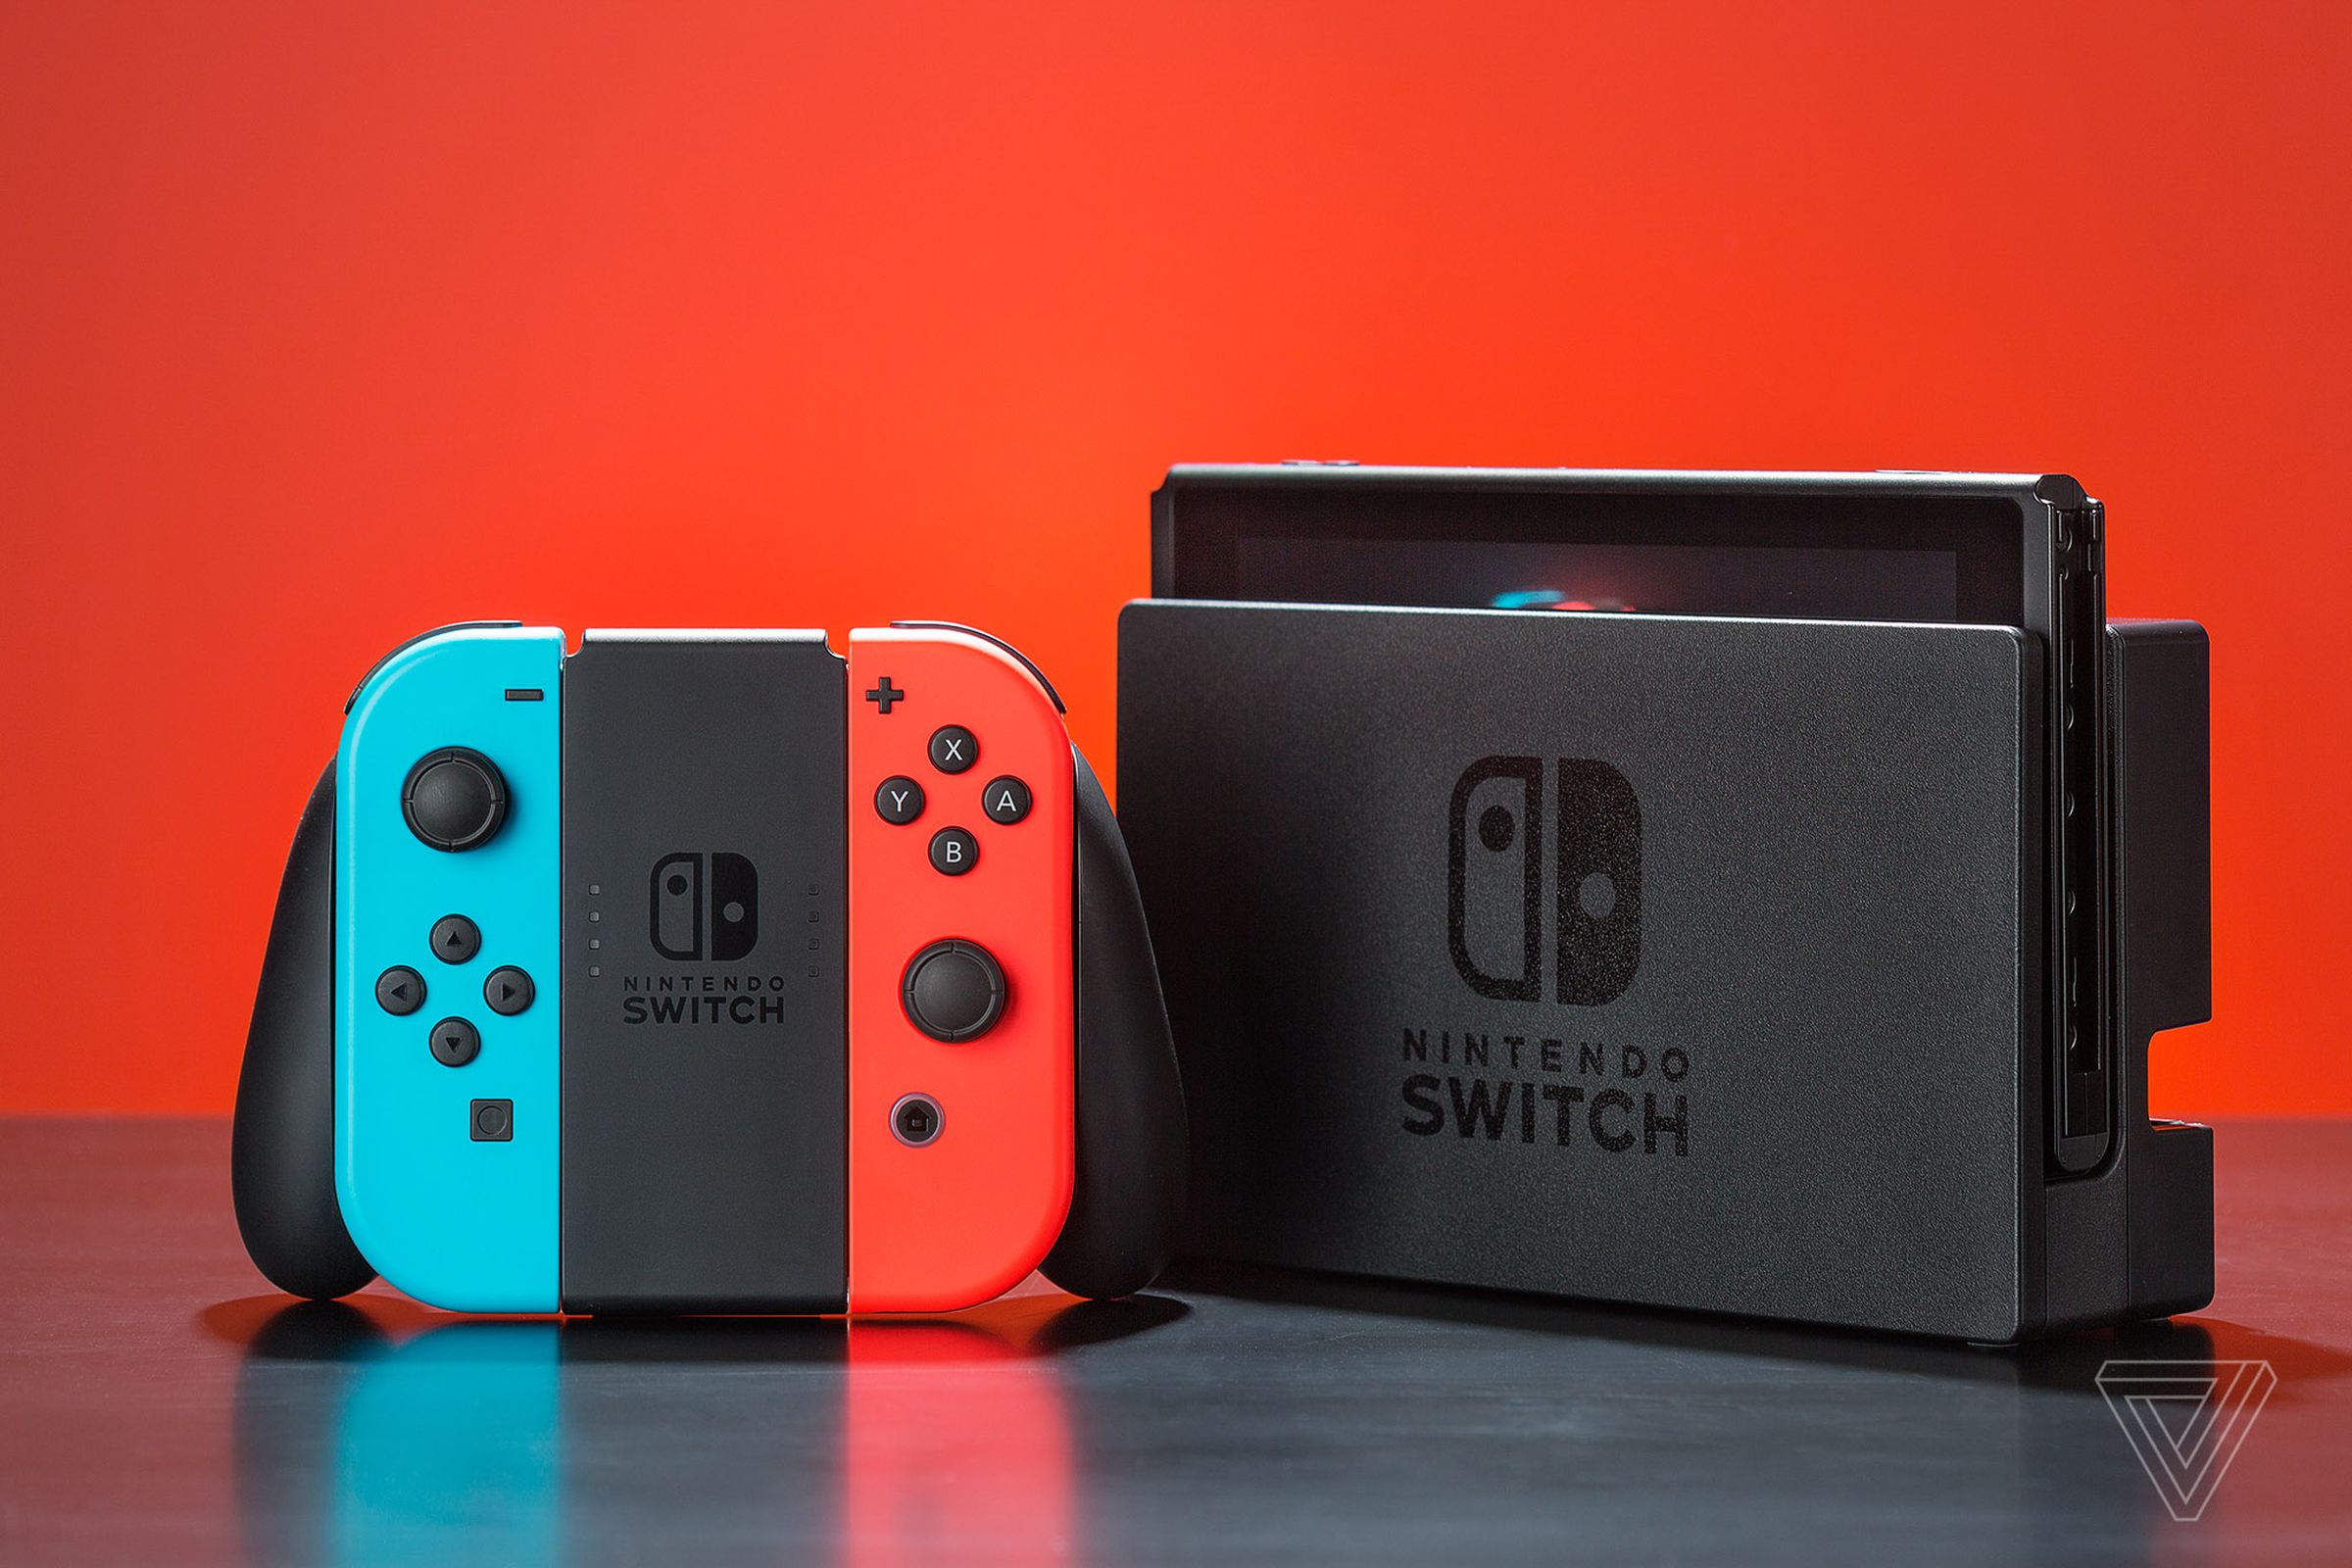 Nintendo's Switch به ندرت تخفیفی می بیند، اگرچه می توانید با خرید یک مورد بازسازی شده از طریق سایت آن، در هزینه خود صرفه جویی کنید.